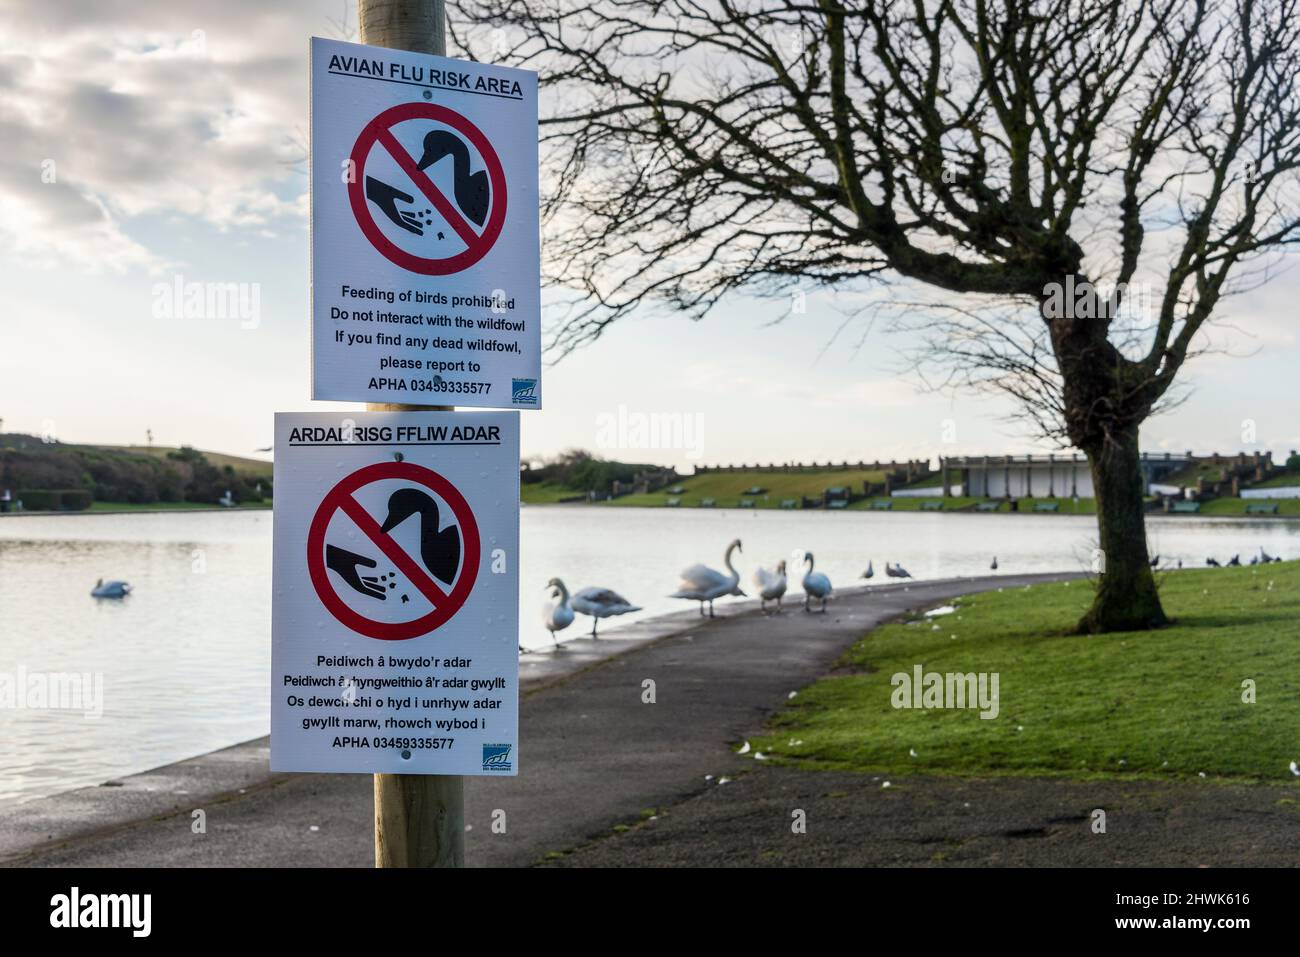 Segni temporanei in lingua gallese e inglese in un parco pubblico avvertendo che l'influenza aviaria, l'influenza aviaria, è presente tra cigni visto in background. Foto Stock